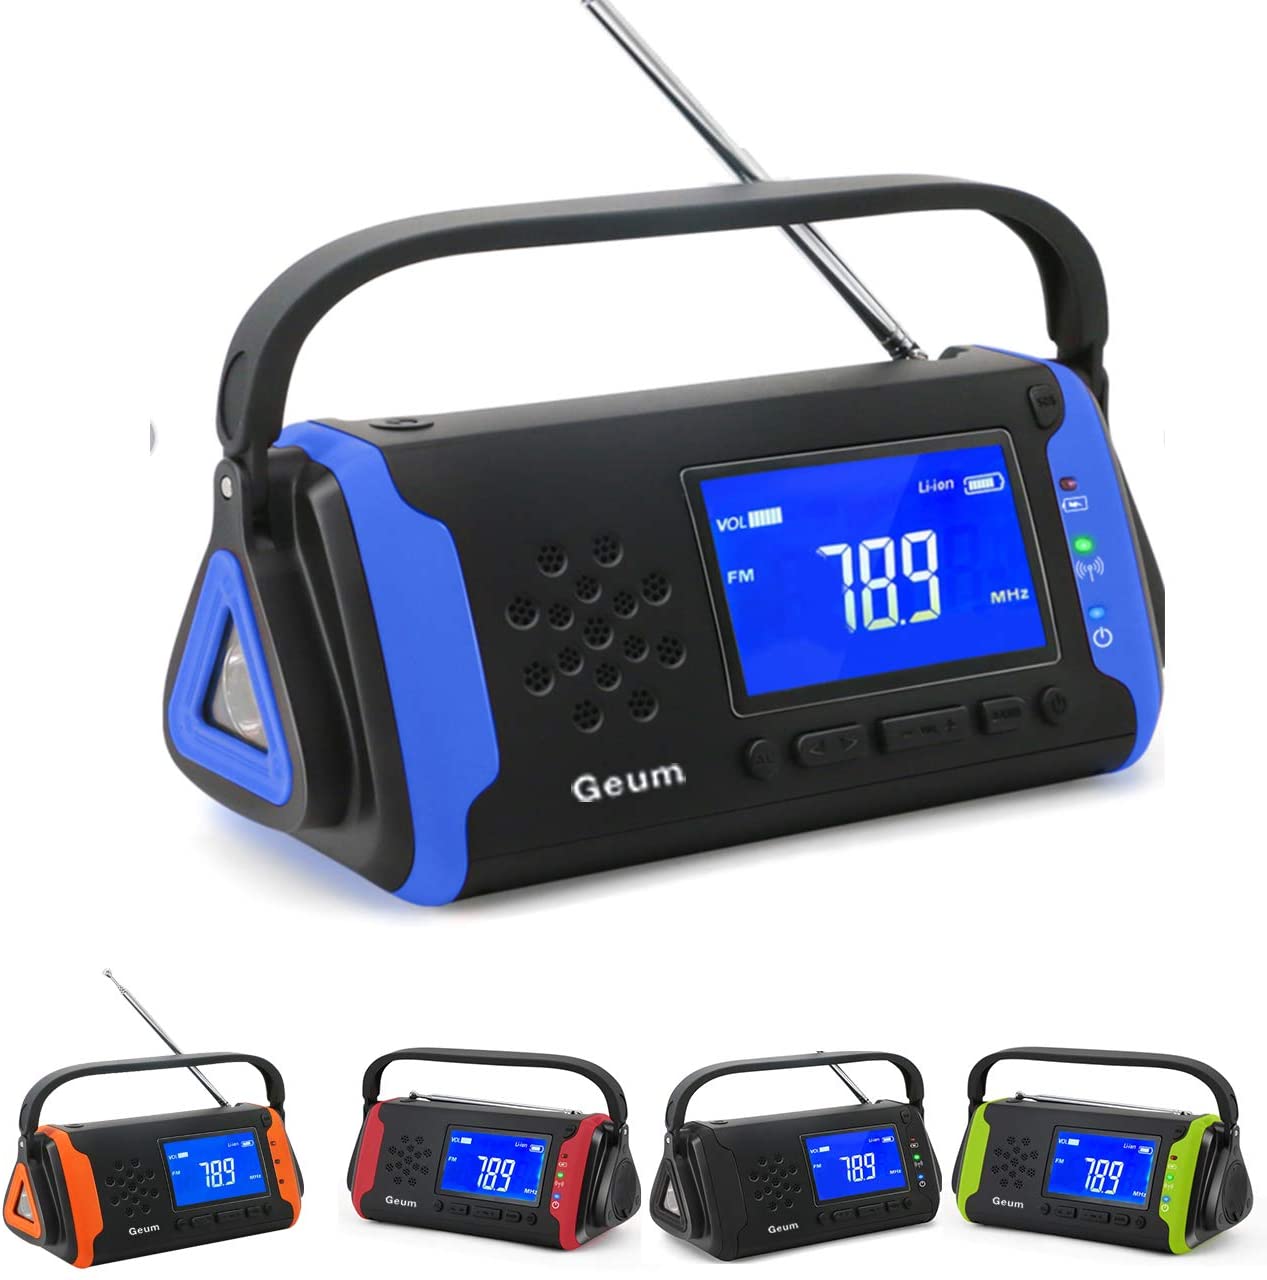 【日本代購】Geum 地震 停電 防災收音機 太陽能充電 防水 LED手電筒 藍色